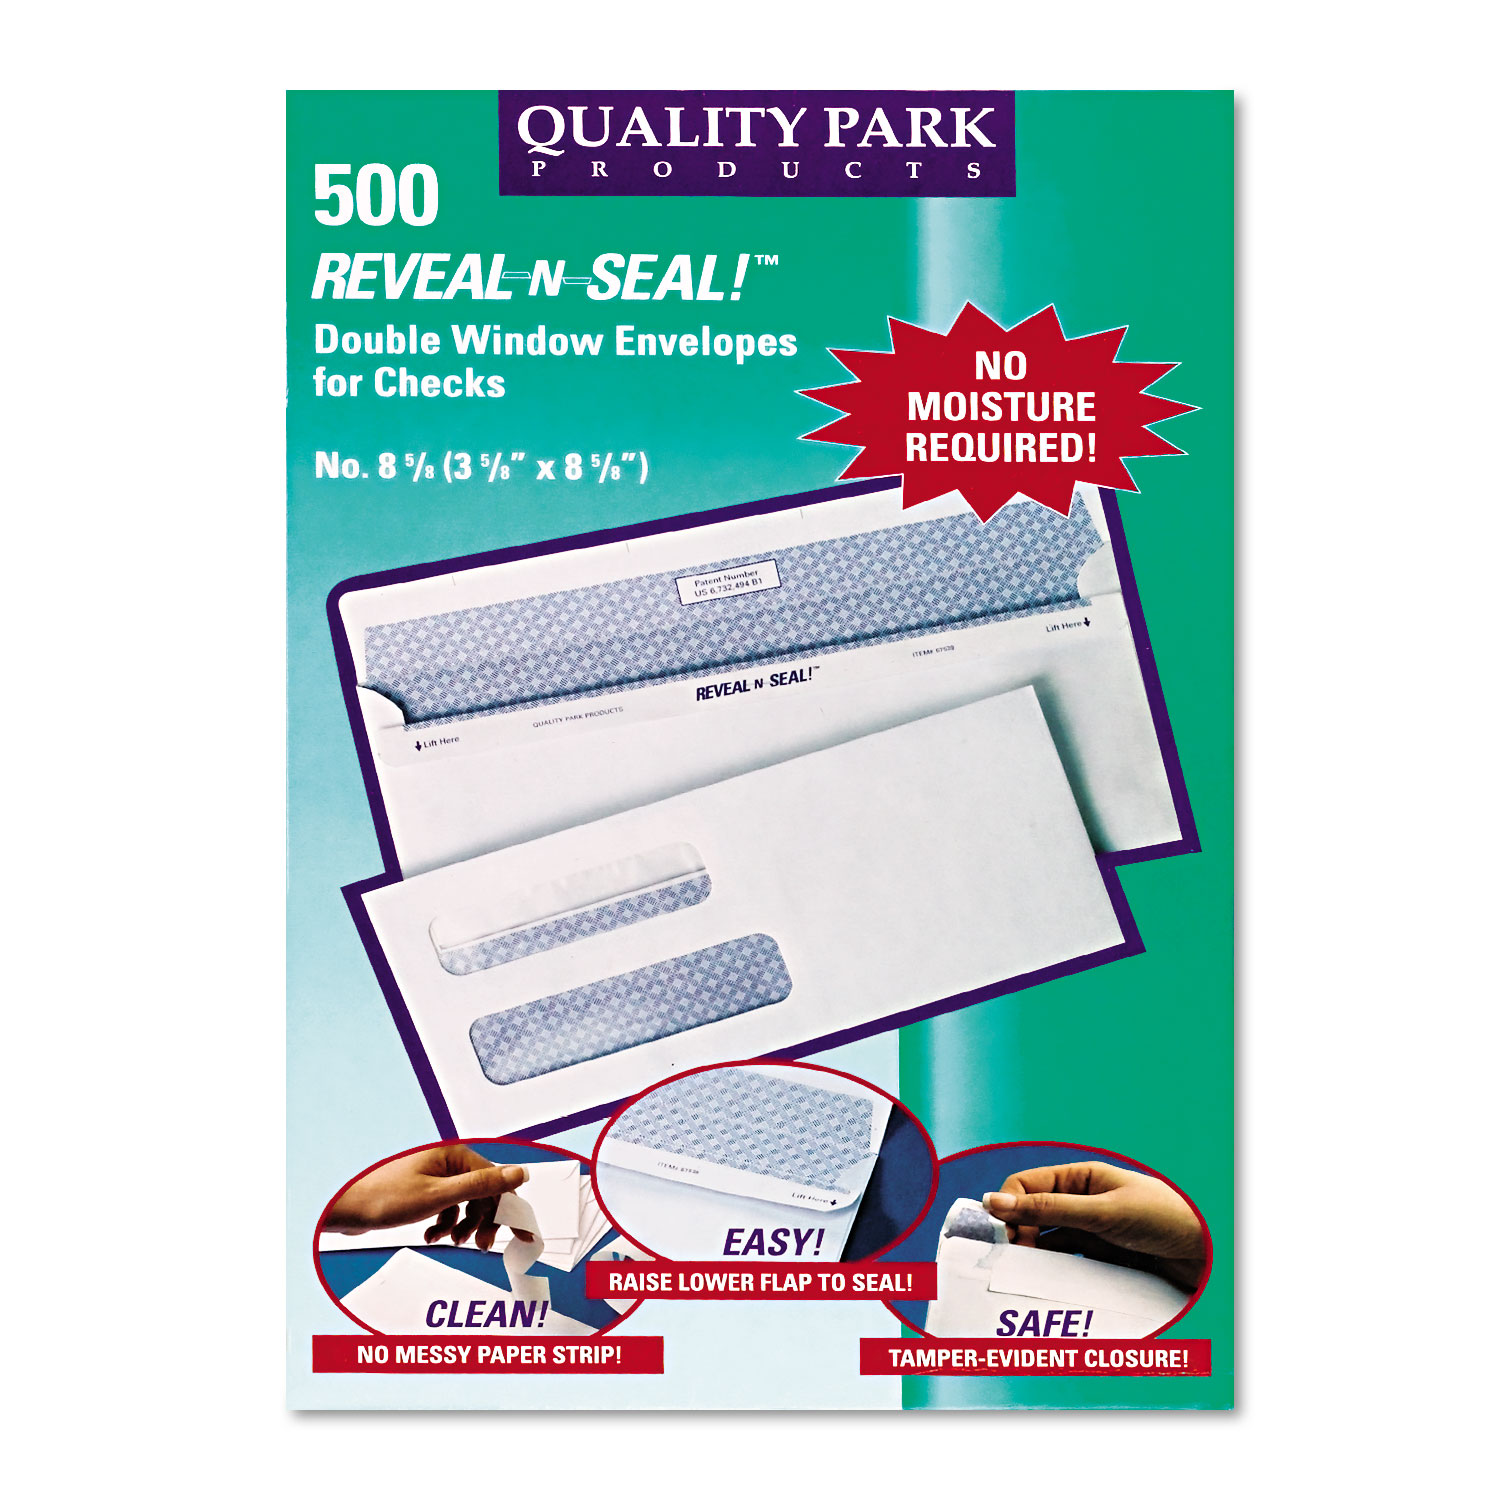 Reveal N Seal 2-Window Check Envelope, #8 5/8, 3 5/8 x 8 5/8, White, 500/Box